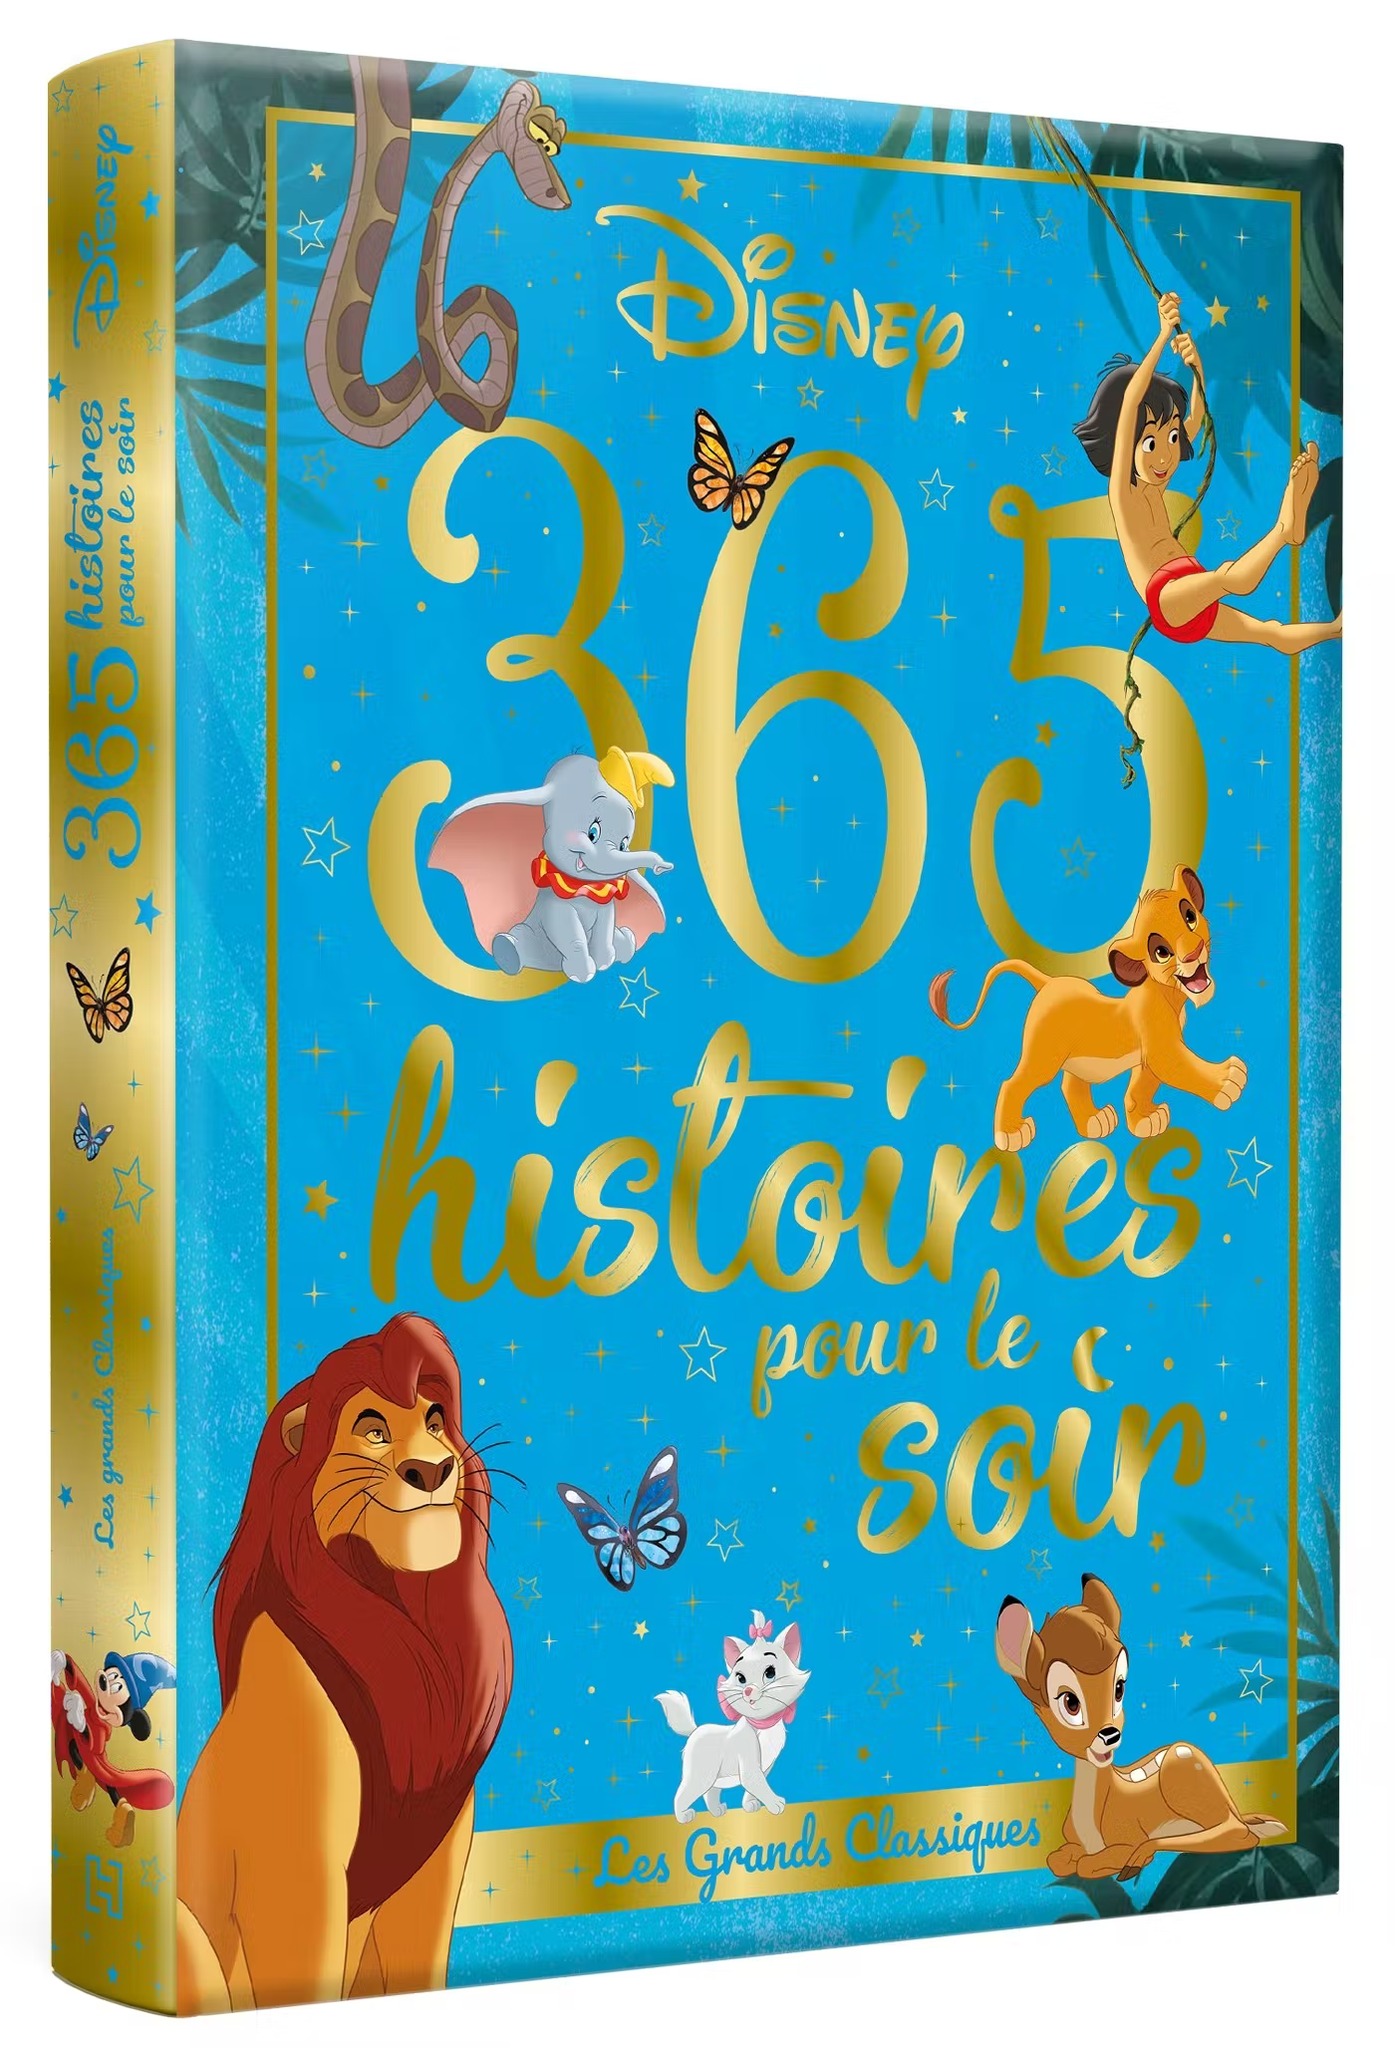 DISNEY 365 histoires pour le soir Les Grands classiques Magic Heroes